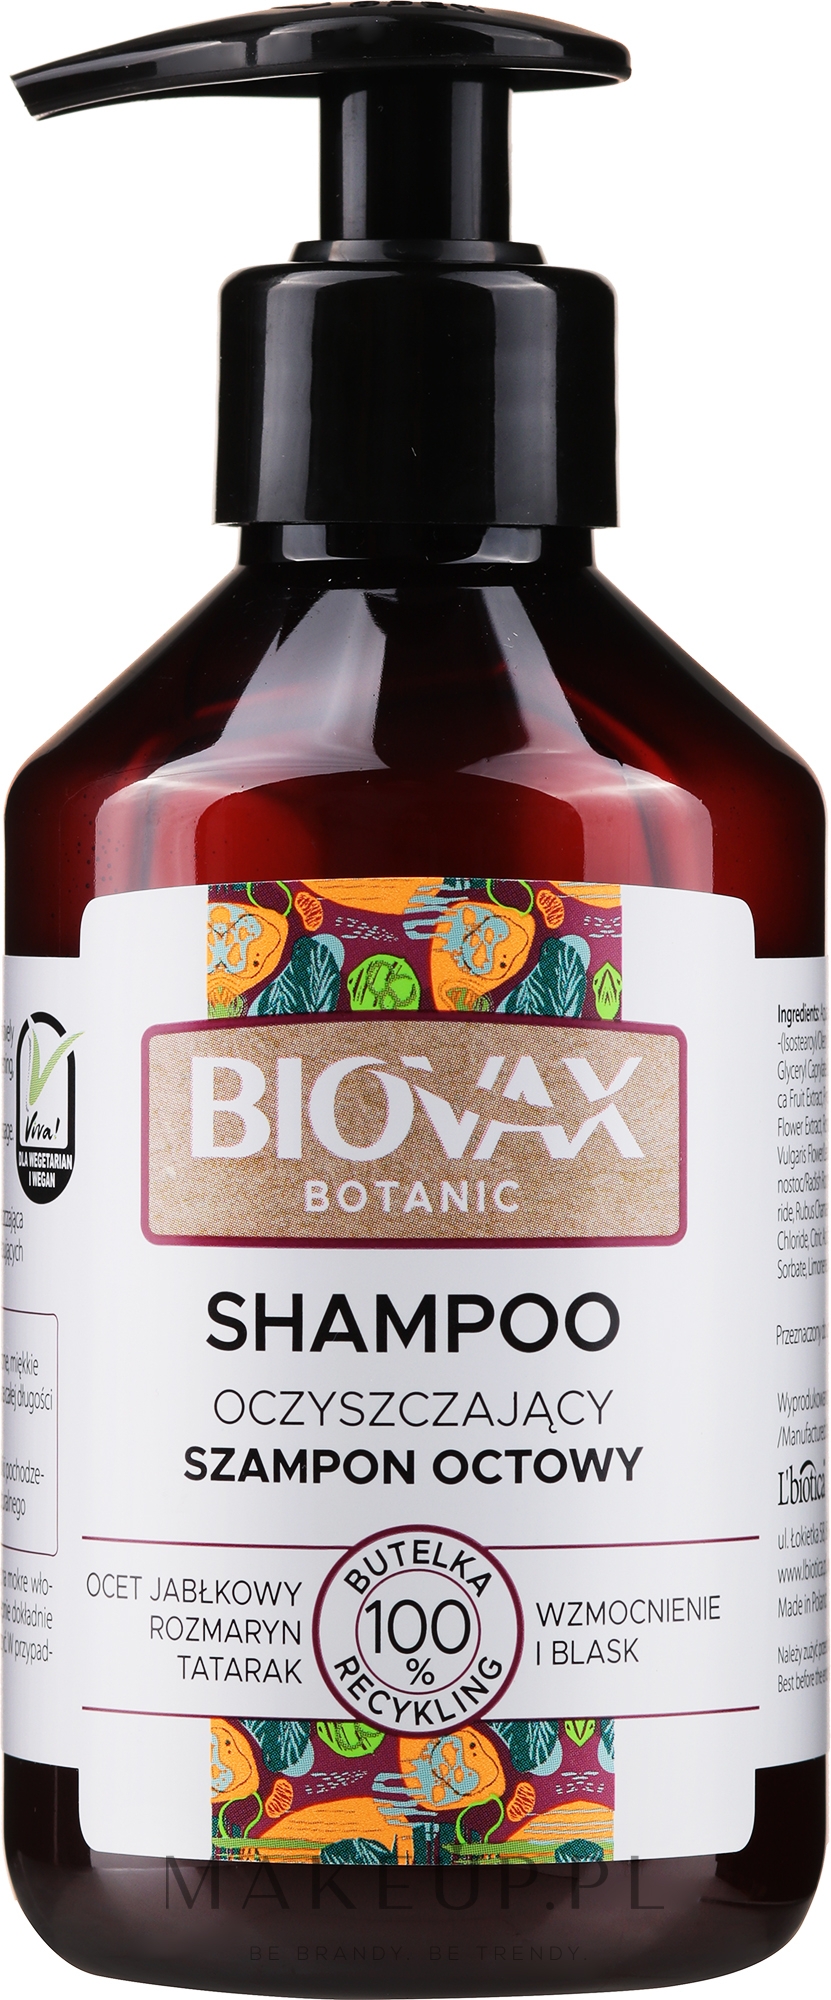 biovax szampon opinie wizaz